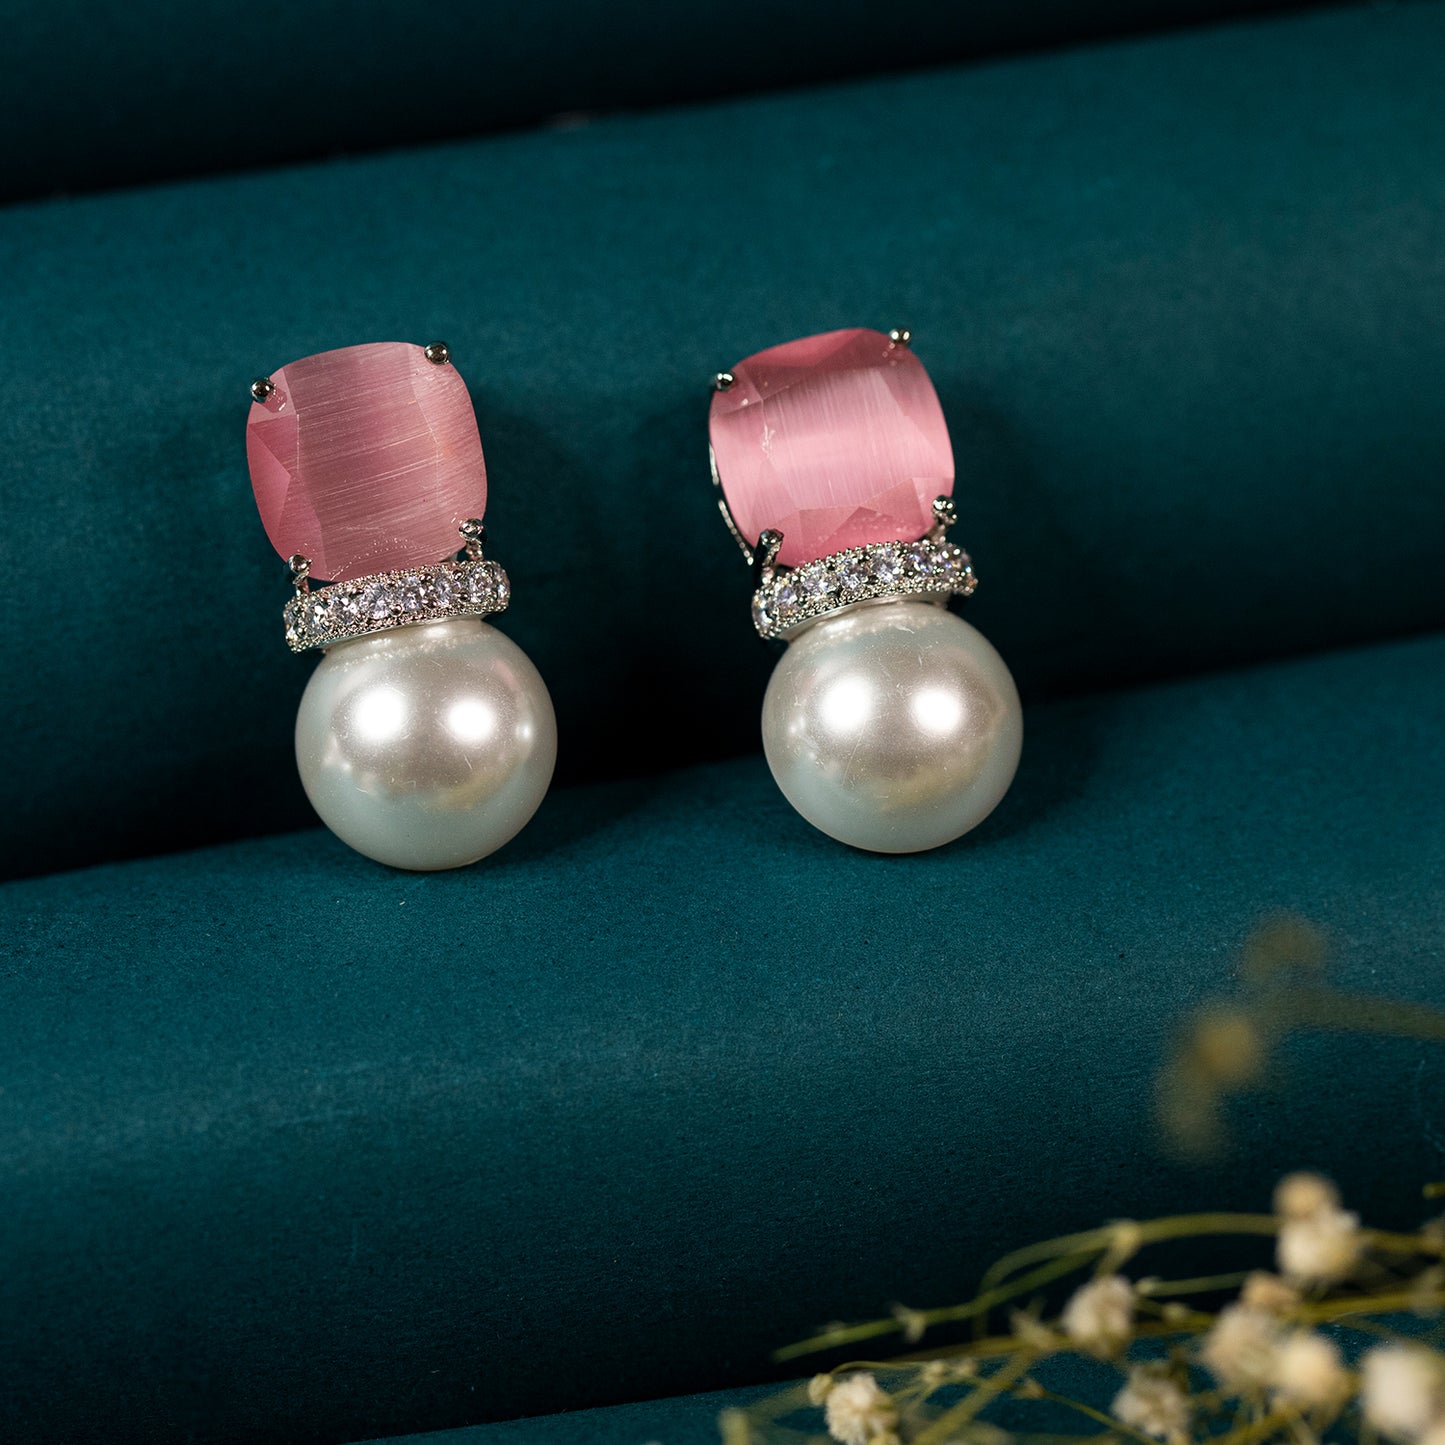 Buy pearl stud earring online